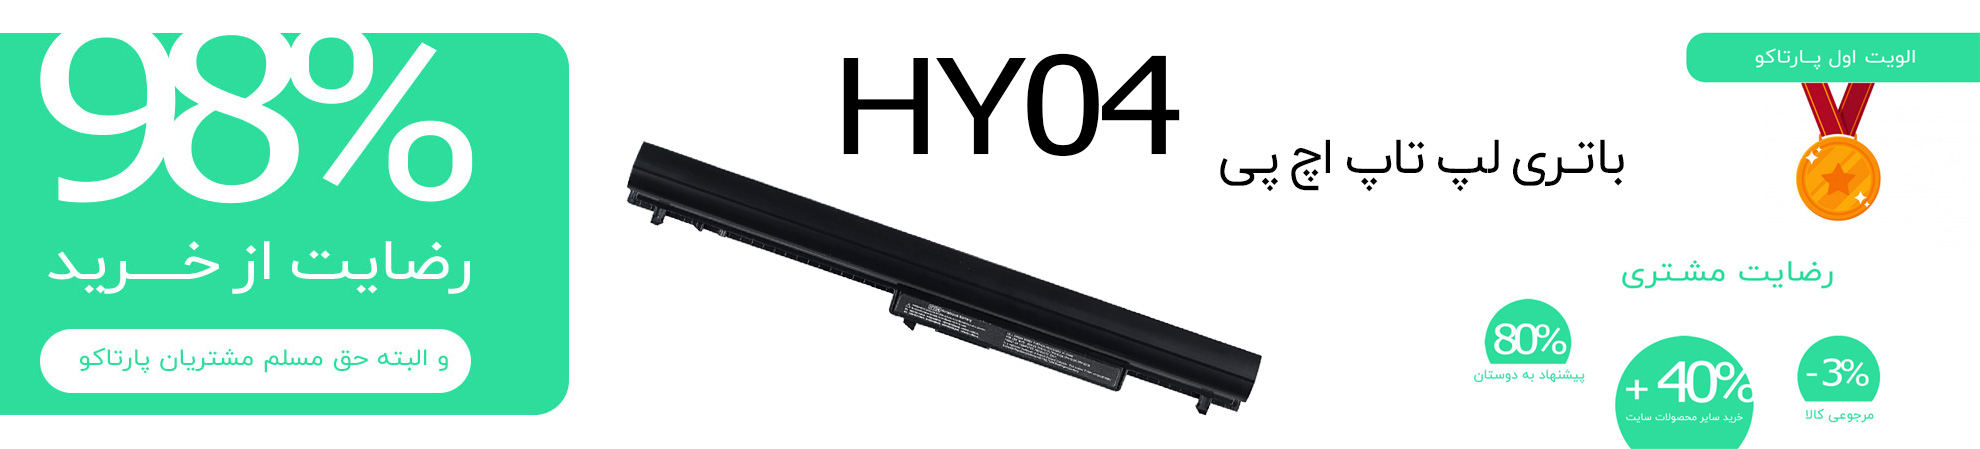 باتری HY04